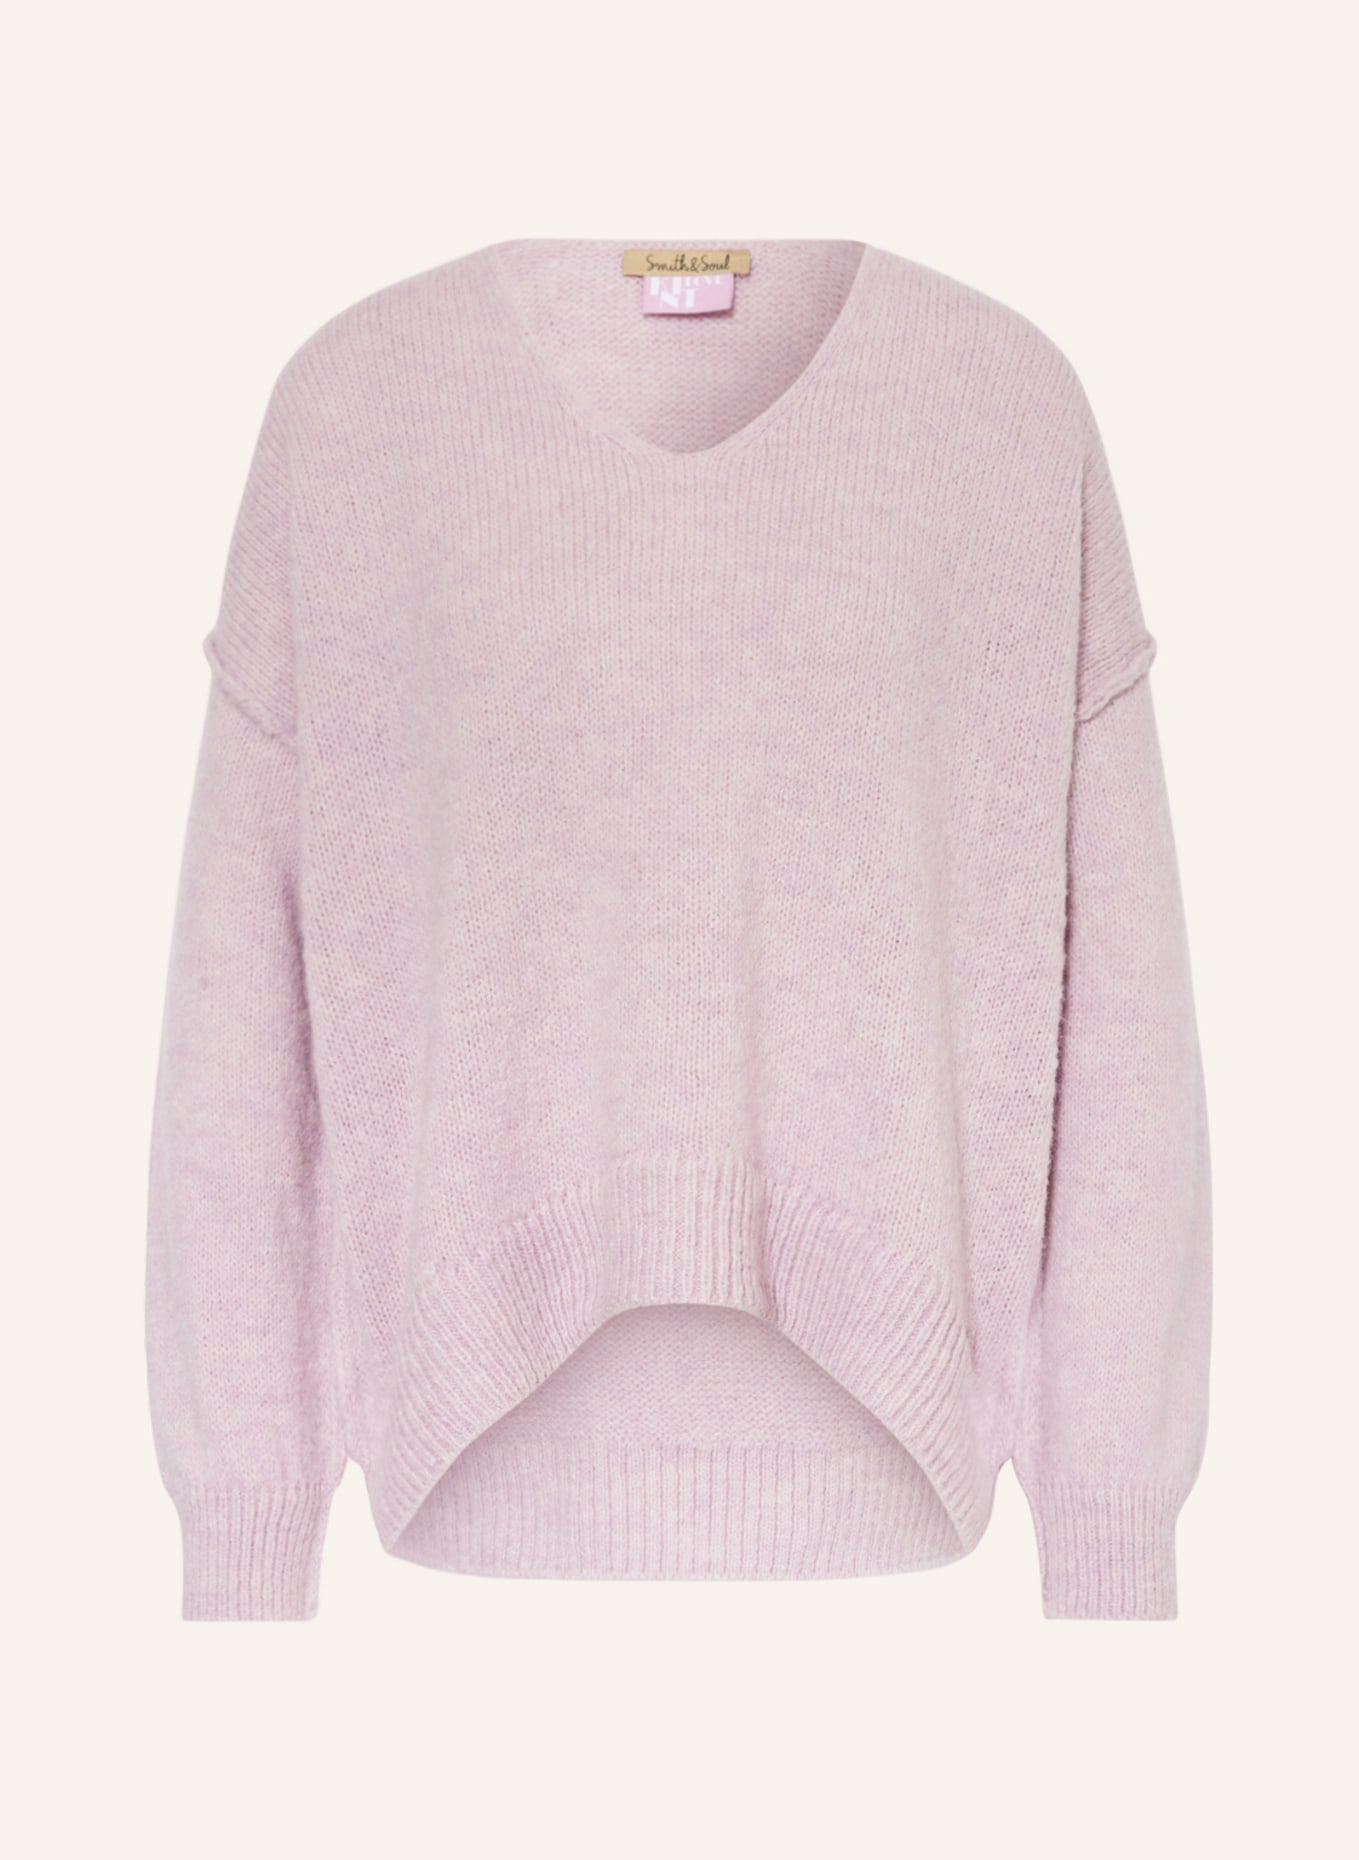 Smith & Soul Sweater with alpaca, Color: LIGHT PURPLE (Image 1)